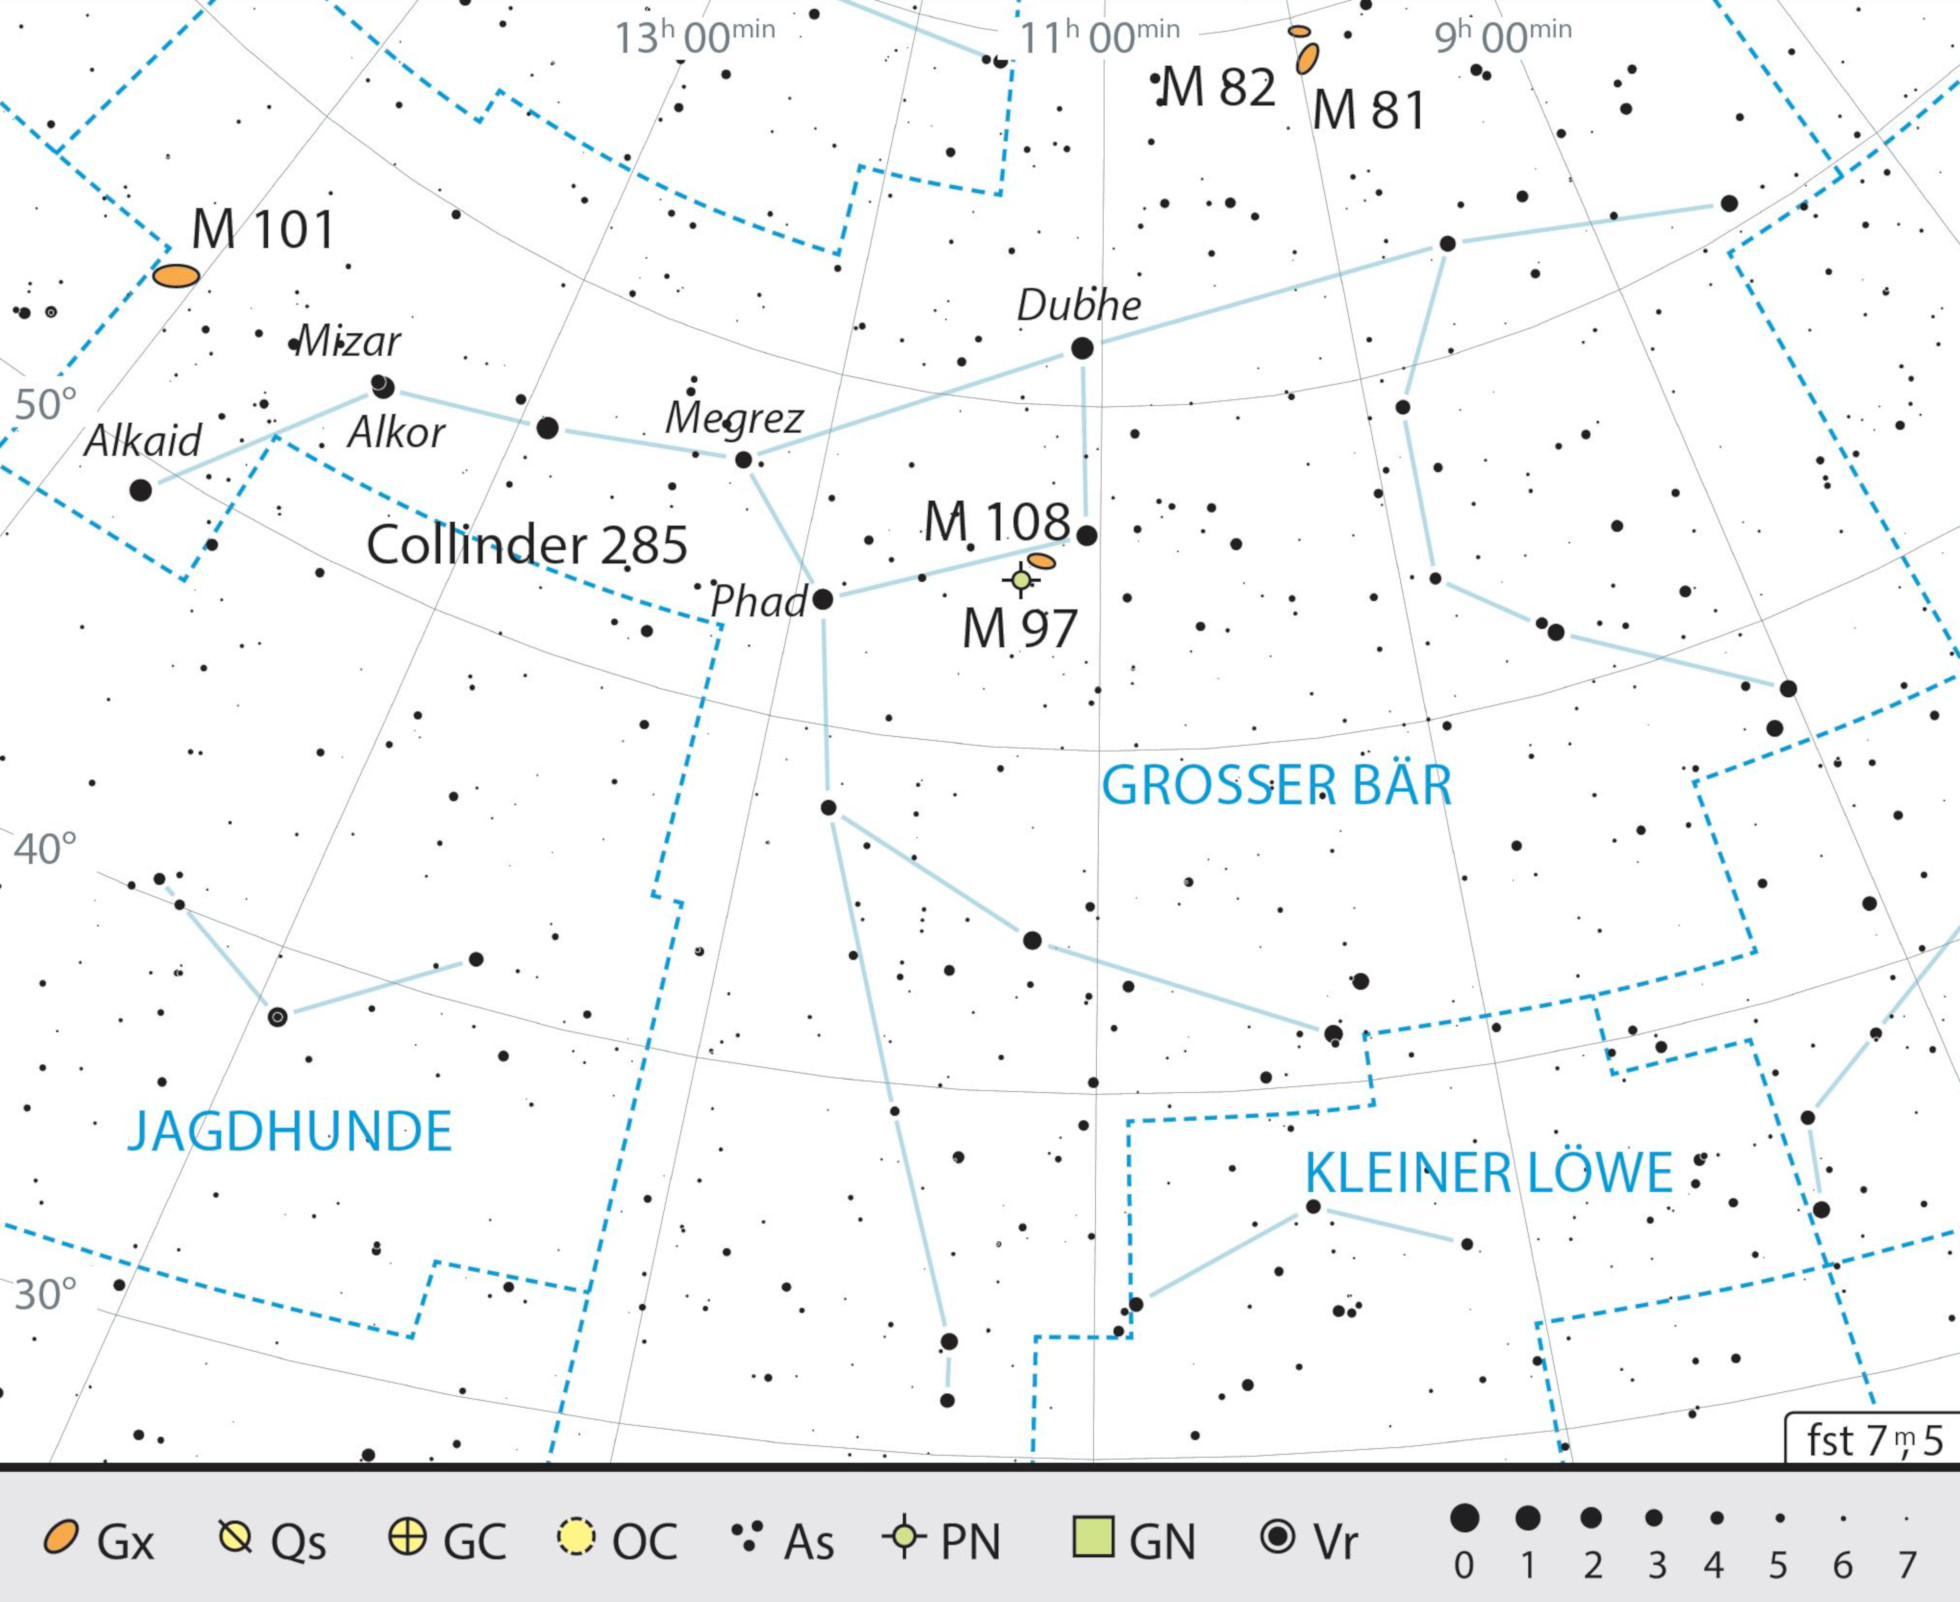 Mappa celeste dell'Orsa Maggiore con gli oggetti consigliati. J. Scholten